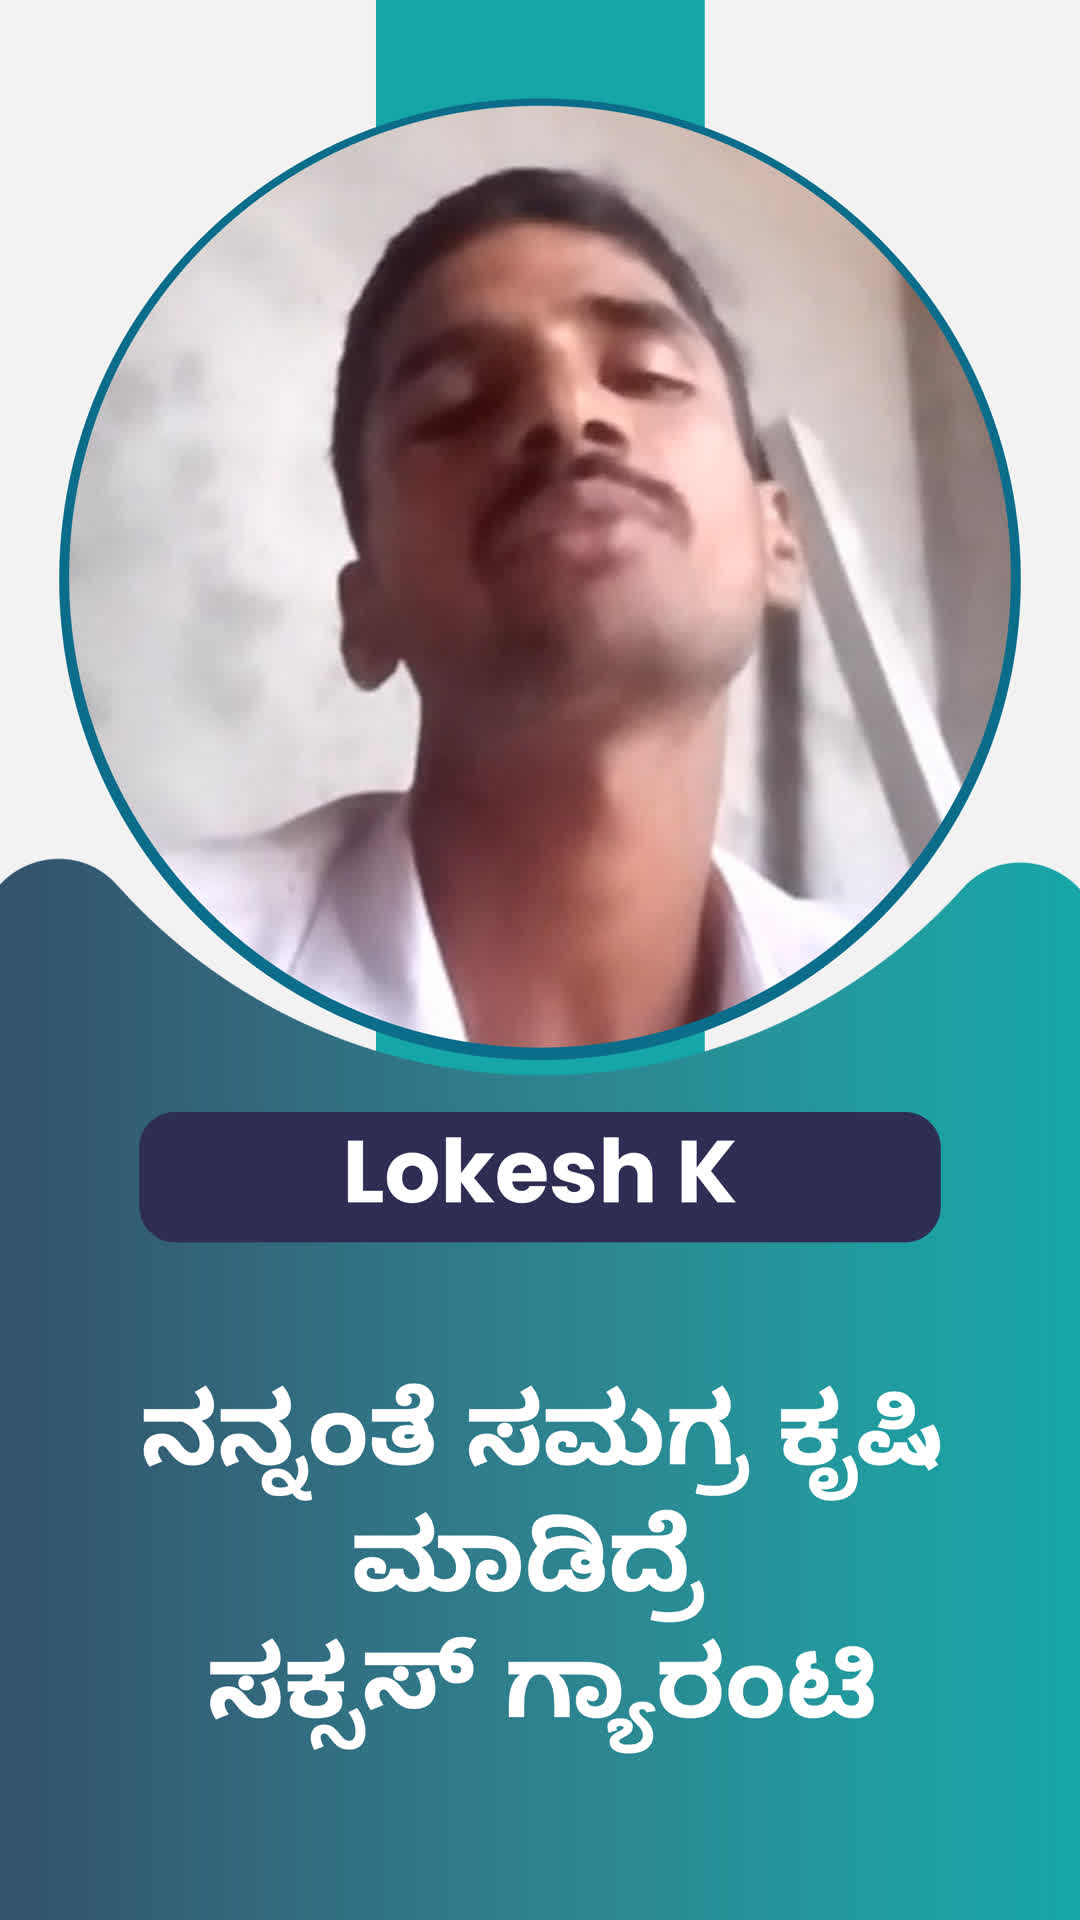 K lokesh's Honest Review of ffreedom app - Ballari ,Karnataka